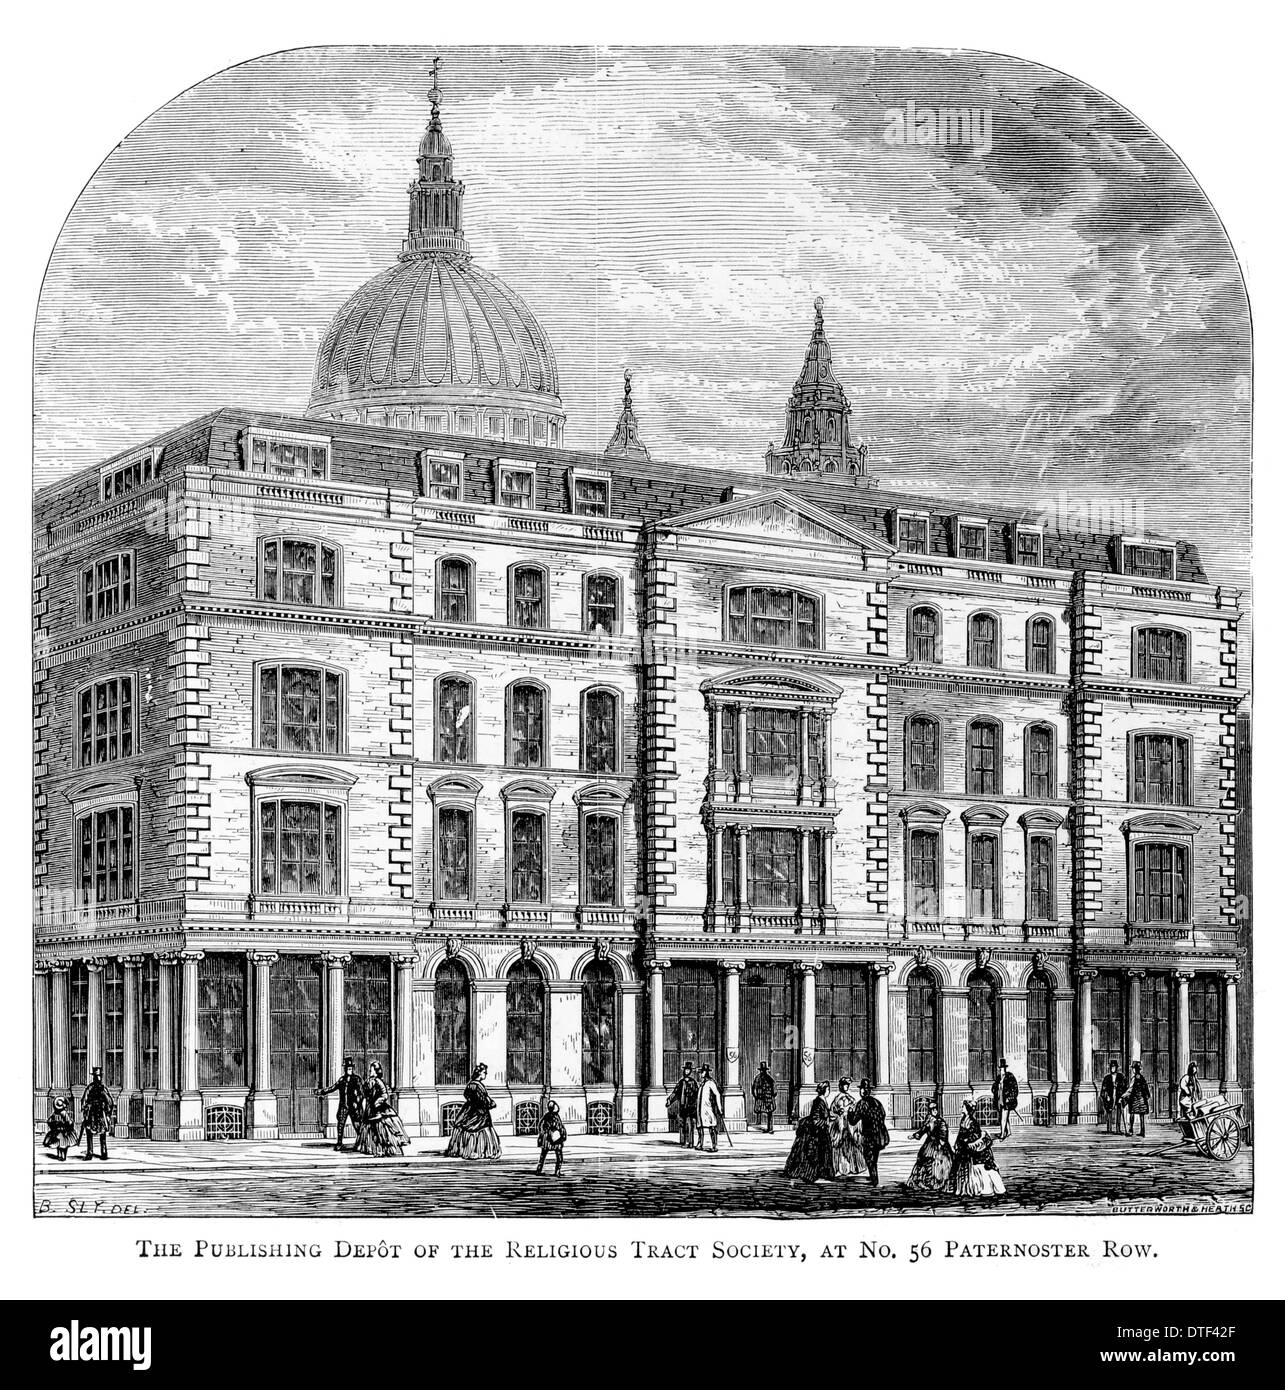 Le dépôt de l'édition de la Religious Tract Society à Paternoster Row numéro 56 vers 1890 Banque D'Images